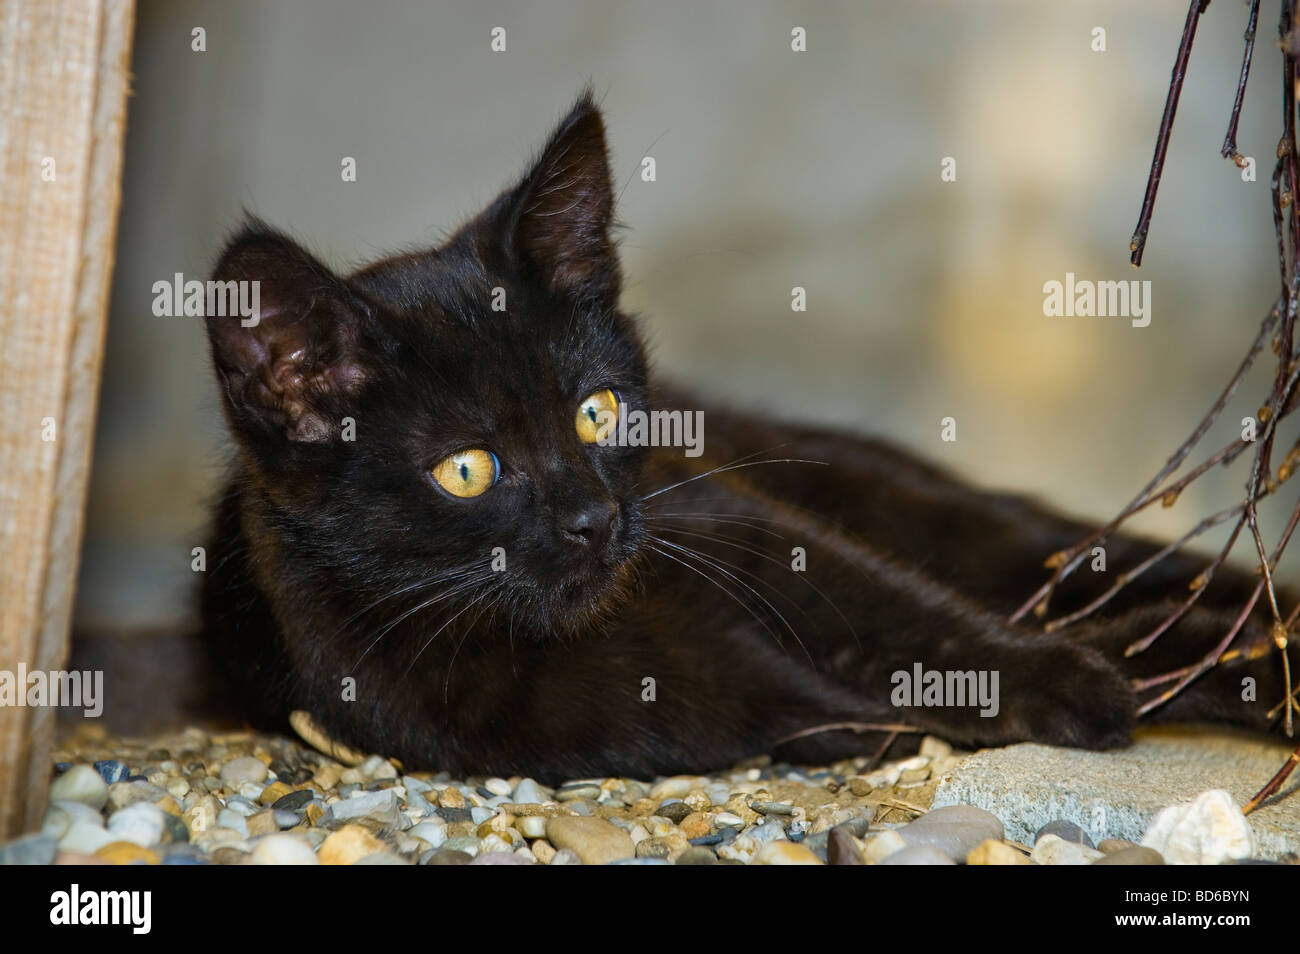 junge schwarze Katze mit geheimnisvollen gelben Augen Kätzchen im freien verlegen Verlegung Aussehen suchen Tiere Katze Kätzchen Abend Licht Cateye Auge g Stockfoto